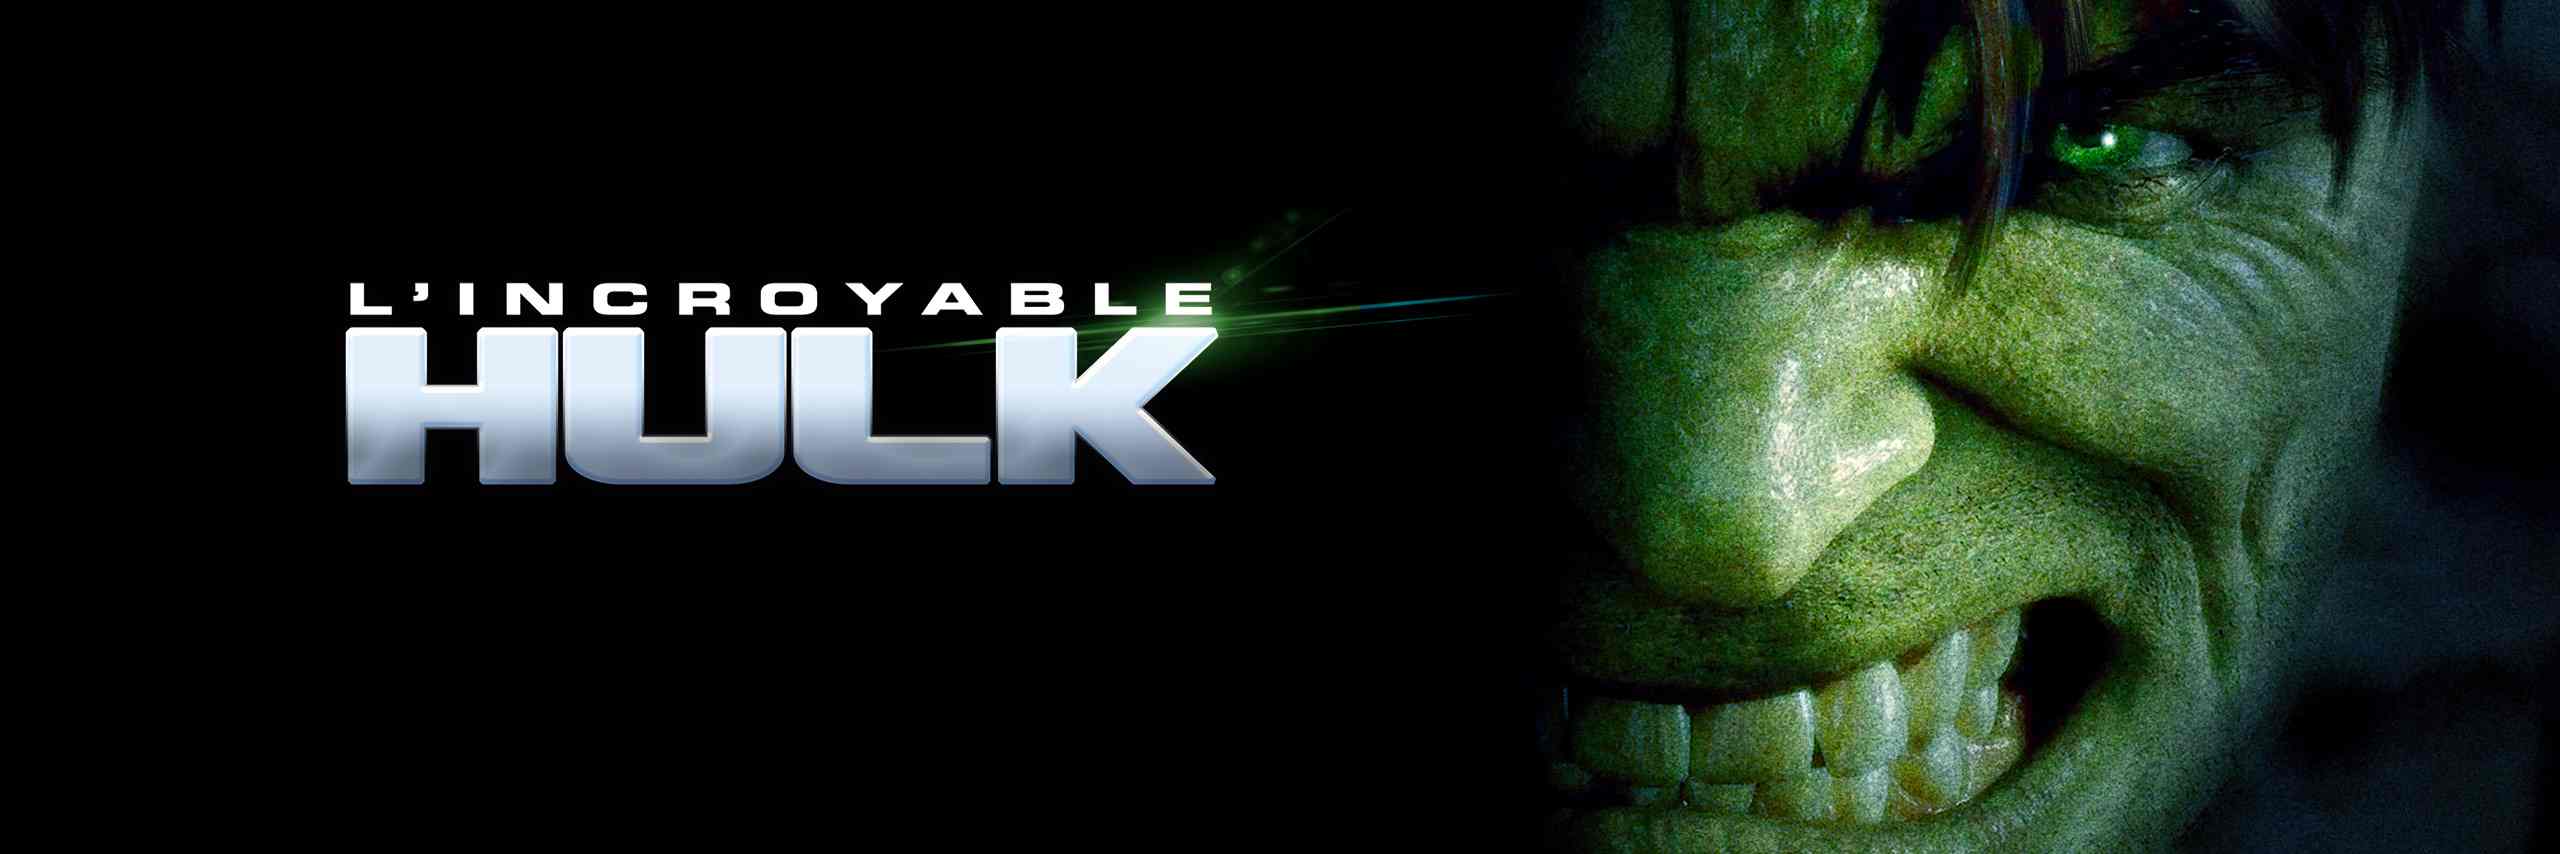 L'incroyable hulk en streaming.